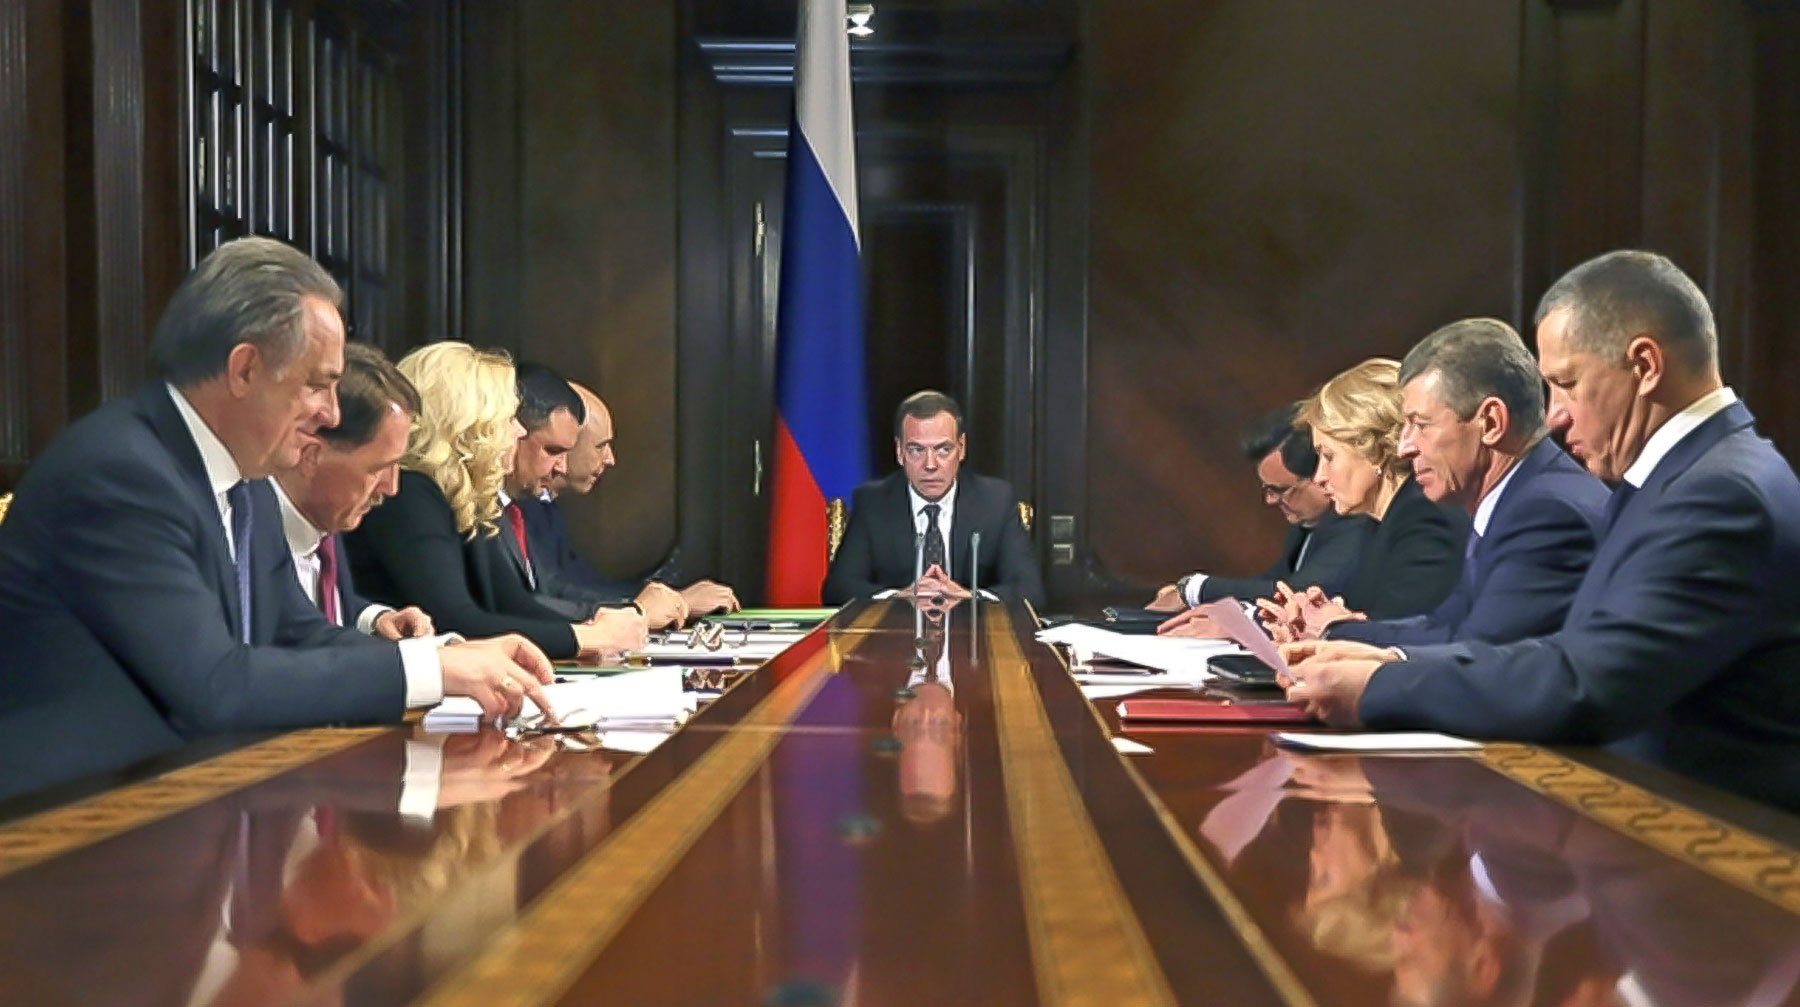 Ранее классификация происходила на добровольной основе Председатель правительства РФ Дмитрий Медведев на совещании вице-премьеров